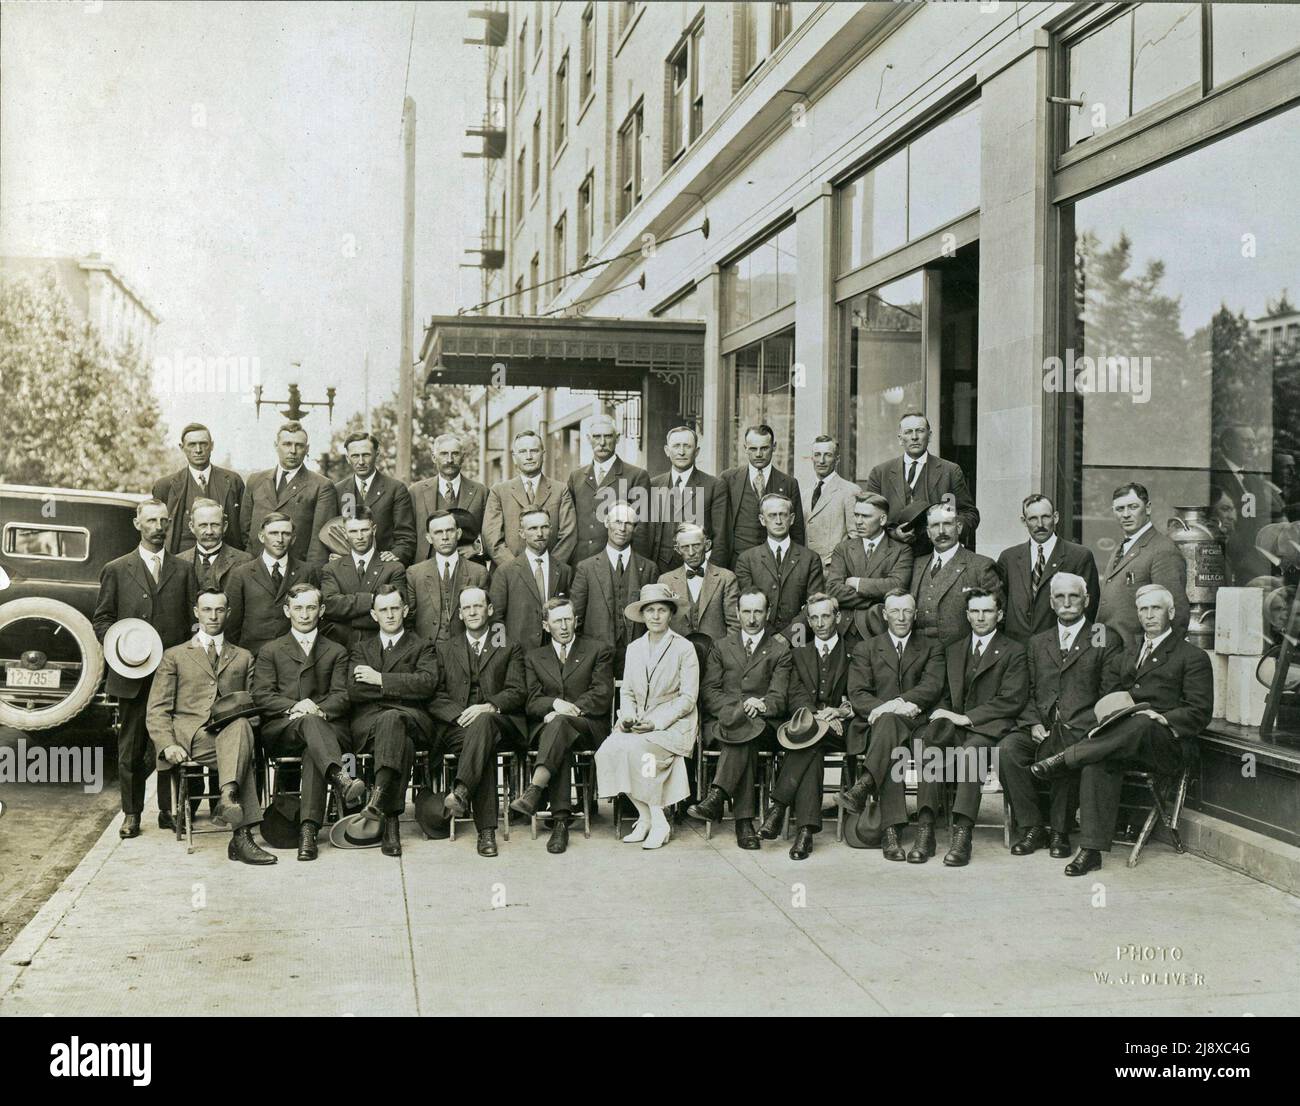 Photo B&W des députés législatifs de l'UFA de l'Alberta élus en juillet 1921 devant l'édifice Lougheed. La légende sous la photo se lit comme suit : première rangée (de gauche à droite) - G. A. Forster, Lorne Proudfoot, A. M. Matheson, L. Peterson, N. S. Smith, Mme W. Parlby, Geo. MacLachlan, S. A. Carson, D. M. Kennedy, E. C. Cook, G. W. Smith, W. C. Smith / rangée du milieu (de gauche à droite) - W. M Washburn, Geo. Hoadley, G. N. Johnson, Lauda Joly, W. Fedun, D. H. Galbraith, Alex Moore, M. J. Conner, C. O. F. Wright, O. L. McPherson, D. Cameron, W. H. Shield, A. B. Claypool / rangée arrière (de gauche à droite) - P. J. Enzenauerm Banque D'Images